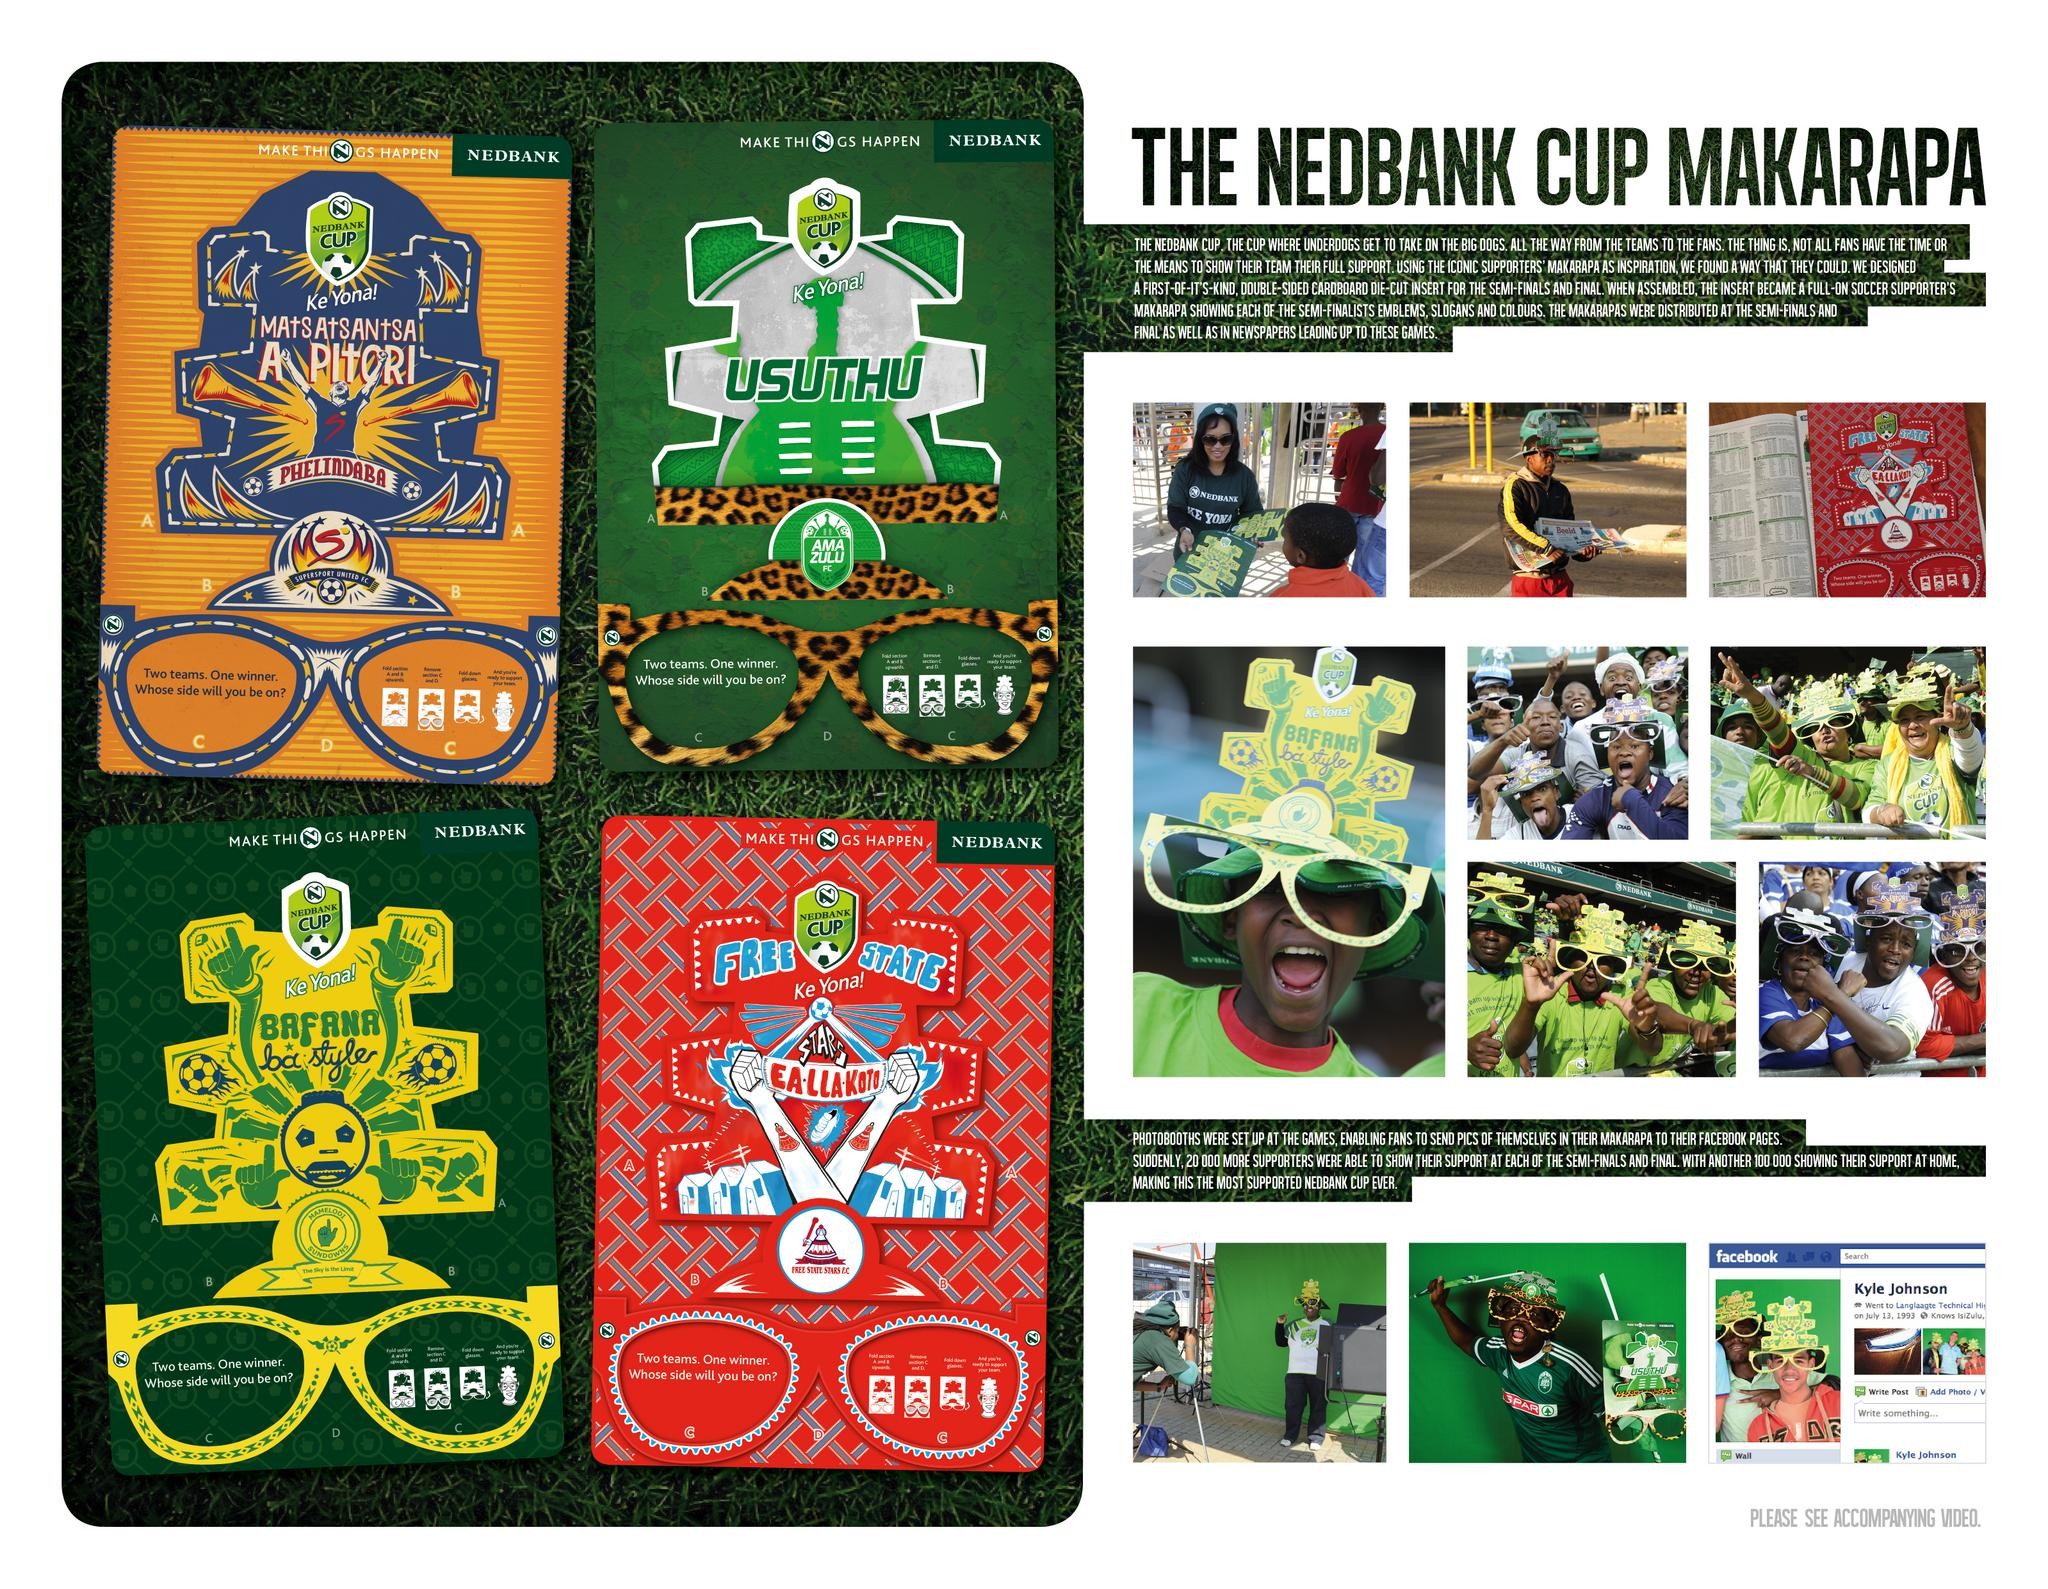 NEDBANK CUP FOOTBALL TOURNAMENT